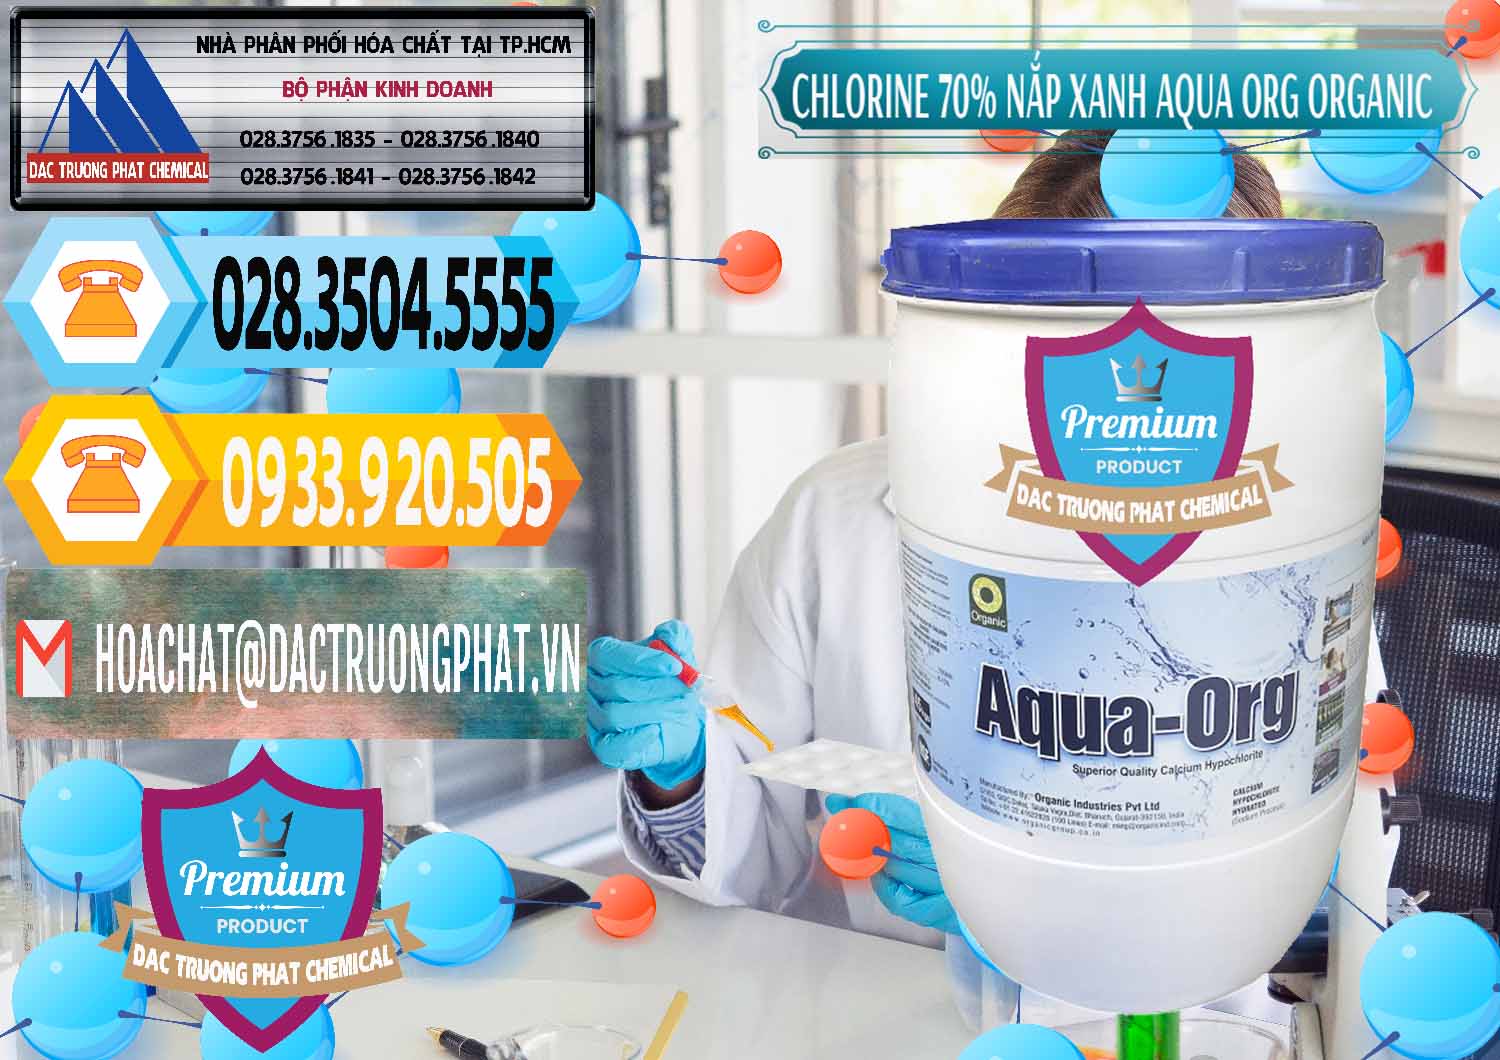 Nhà cung ứng _ bán Chlorine – Clorin 70% Thùng Tròn Nắp Xanh Aqua ORG Organic Ấn Độ India - 0247 - Đơn vị chuyên kinh doanh & phân phối hóa chất tại TP.HCM - hoachattayrua.net